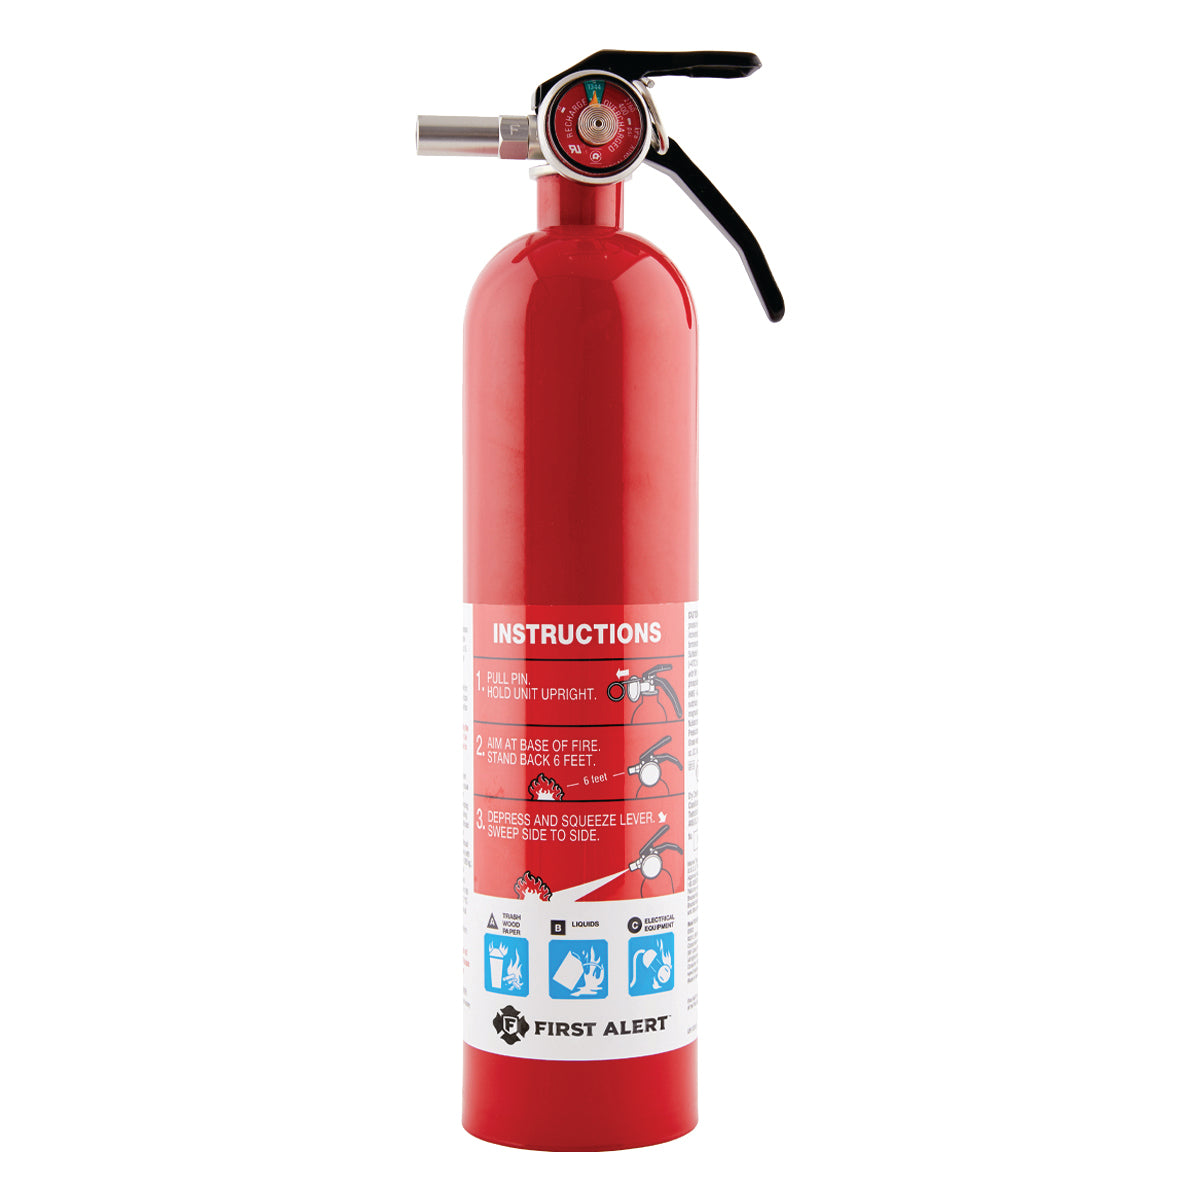 First Alert FE1A10GOA General Purpose Fire Extinguisher 1-A:10-B:C - Red